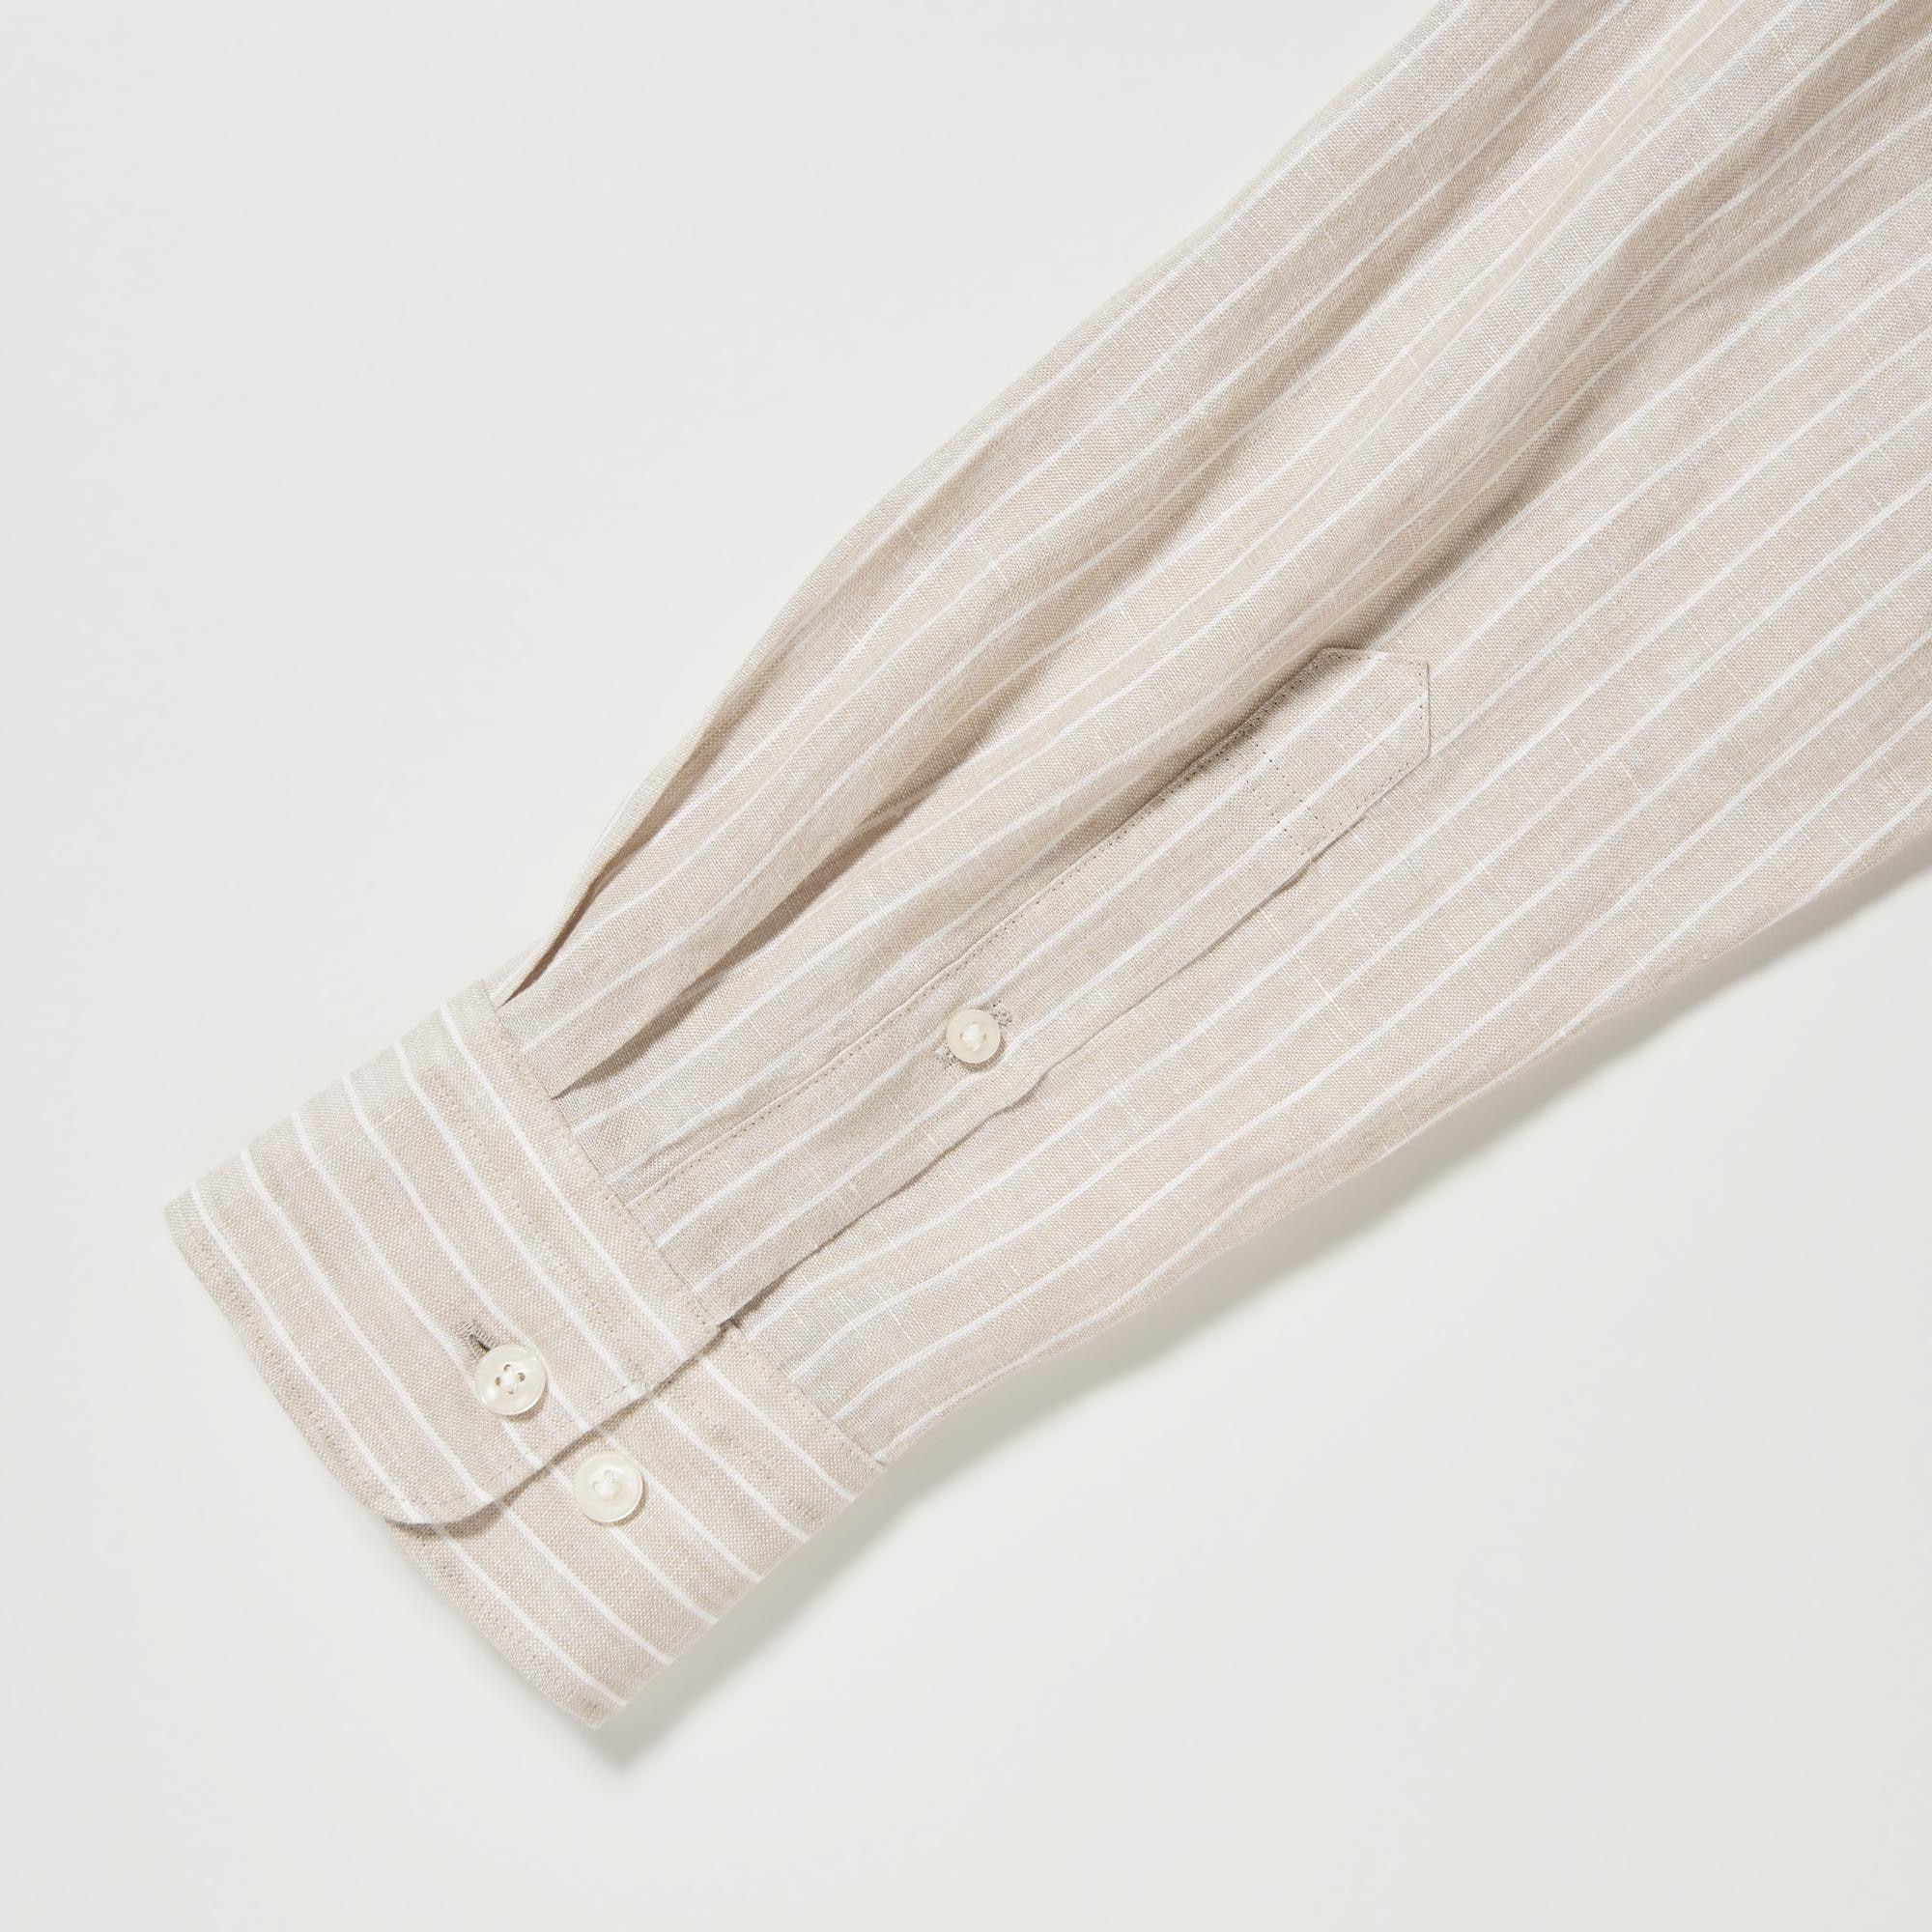 Premium Linen Striped Long-Sleeve Shirt